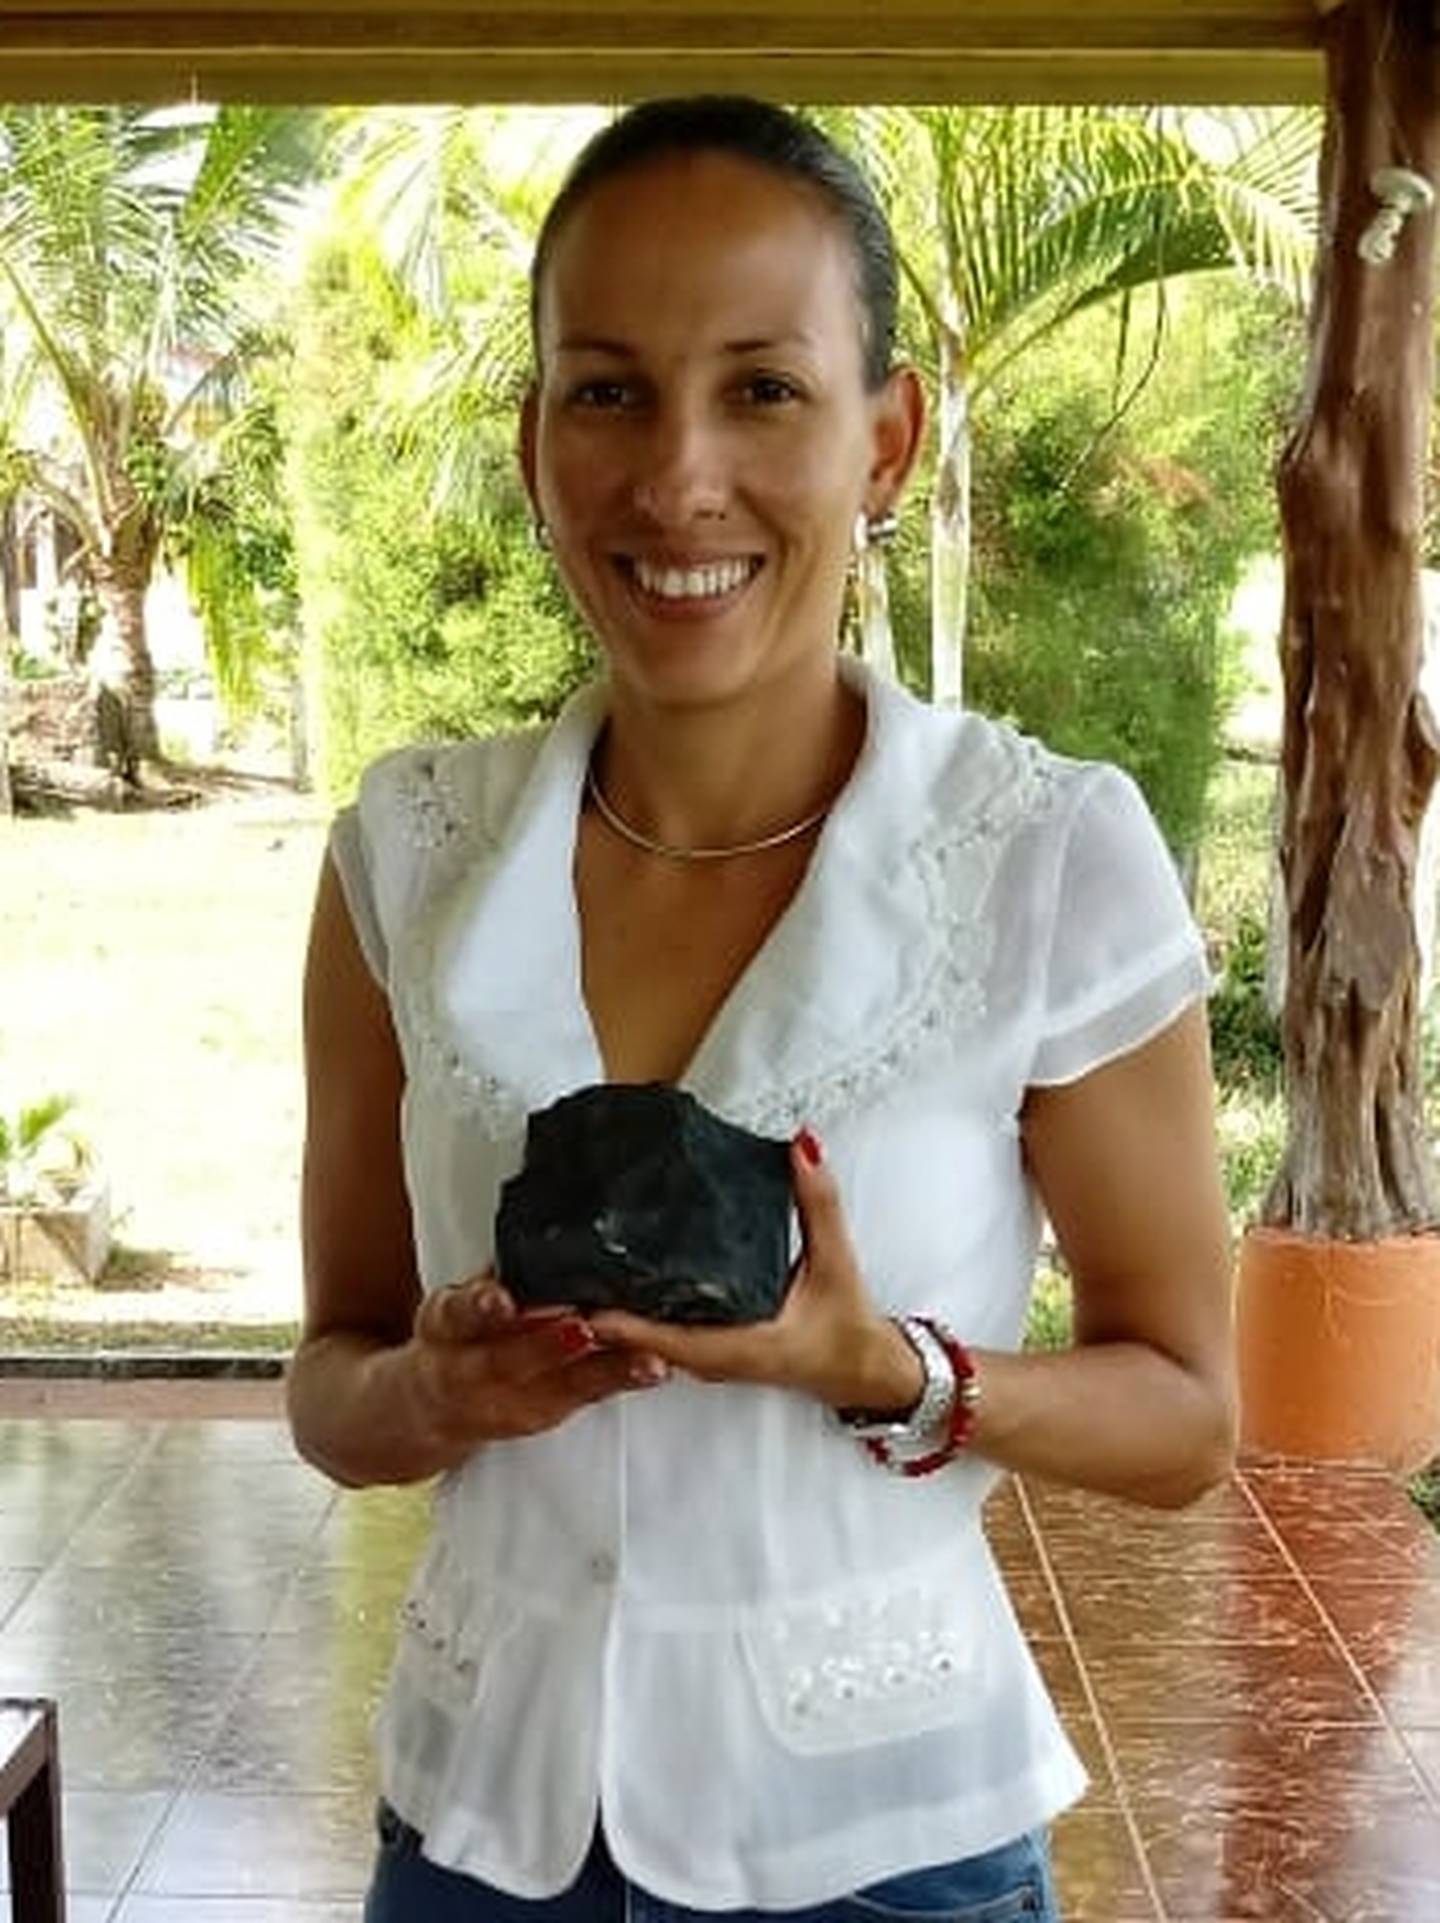 A Marcia Campos Muñoz, el 23 de abril del 2019, le cayó un meteorito en su casa de en La Caporal de Aguas Zarcas de San Carlos, ese meteorito mundialmente se conoce como meteorito Aguas Zarcas